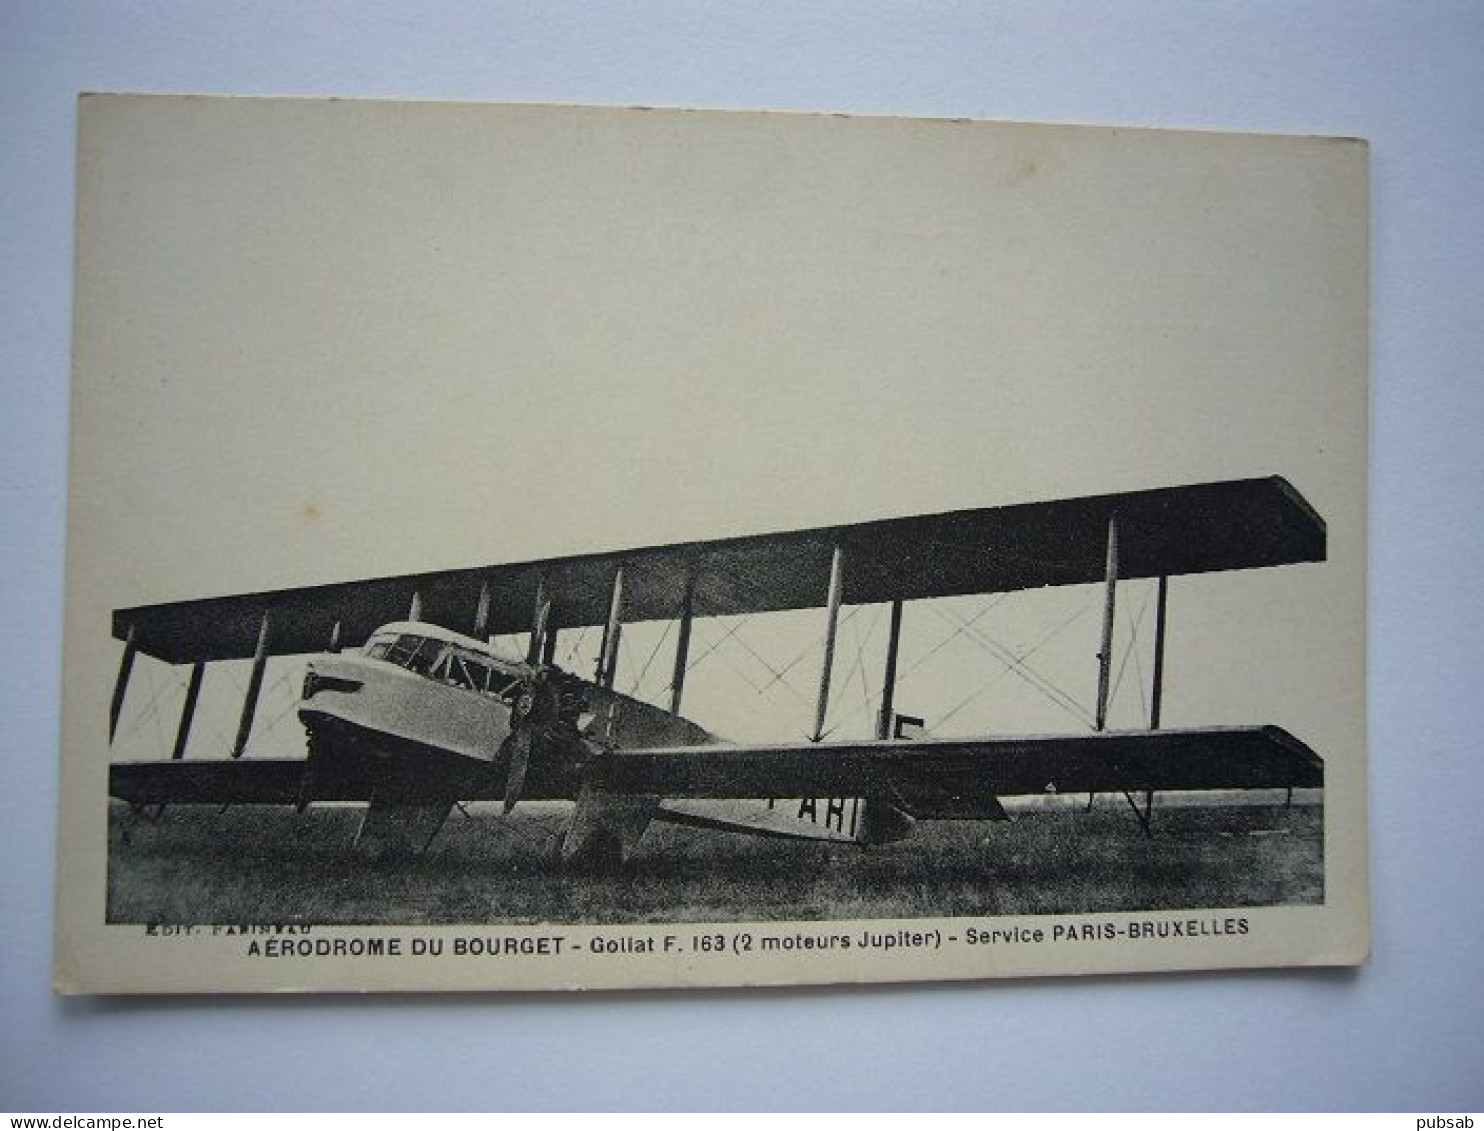 Avion / Airplane / AIR UNION / Farman F60 Goliath - 1919-1938: Entre Guerras